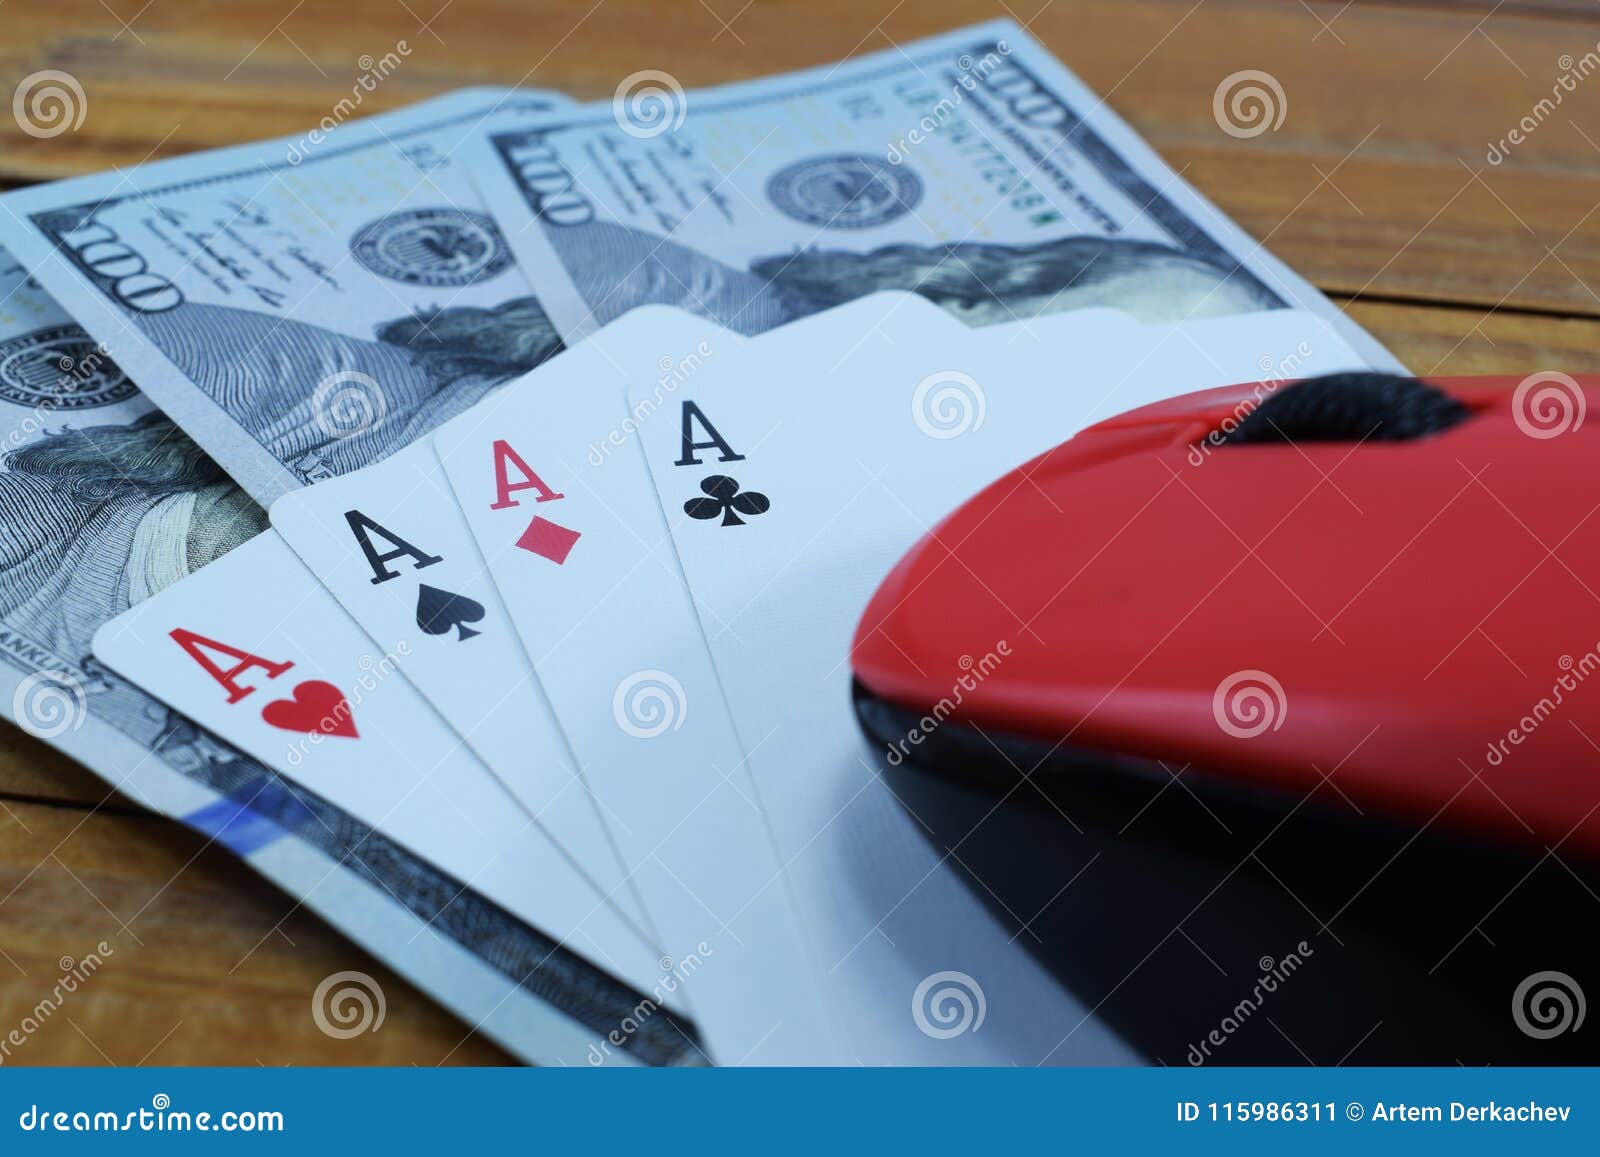 Más información sobre cómo empezar casinos online seguros